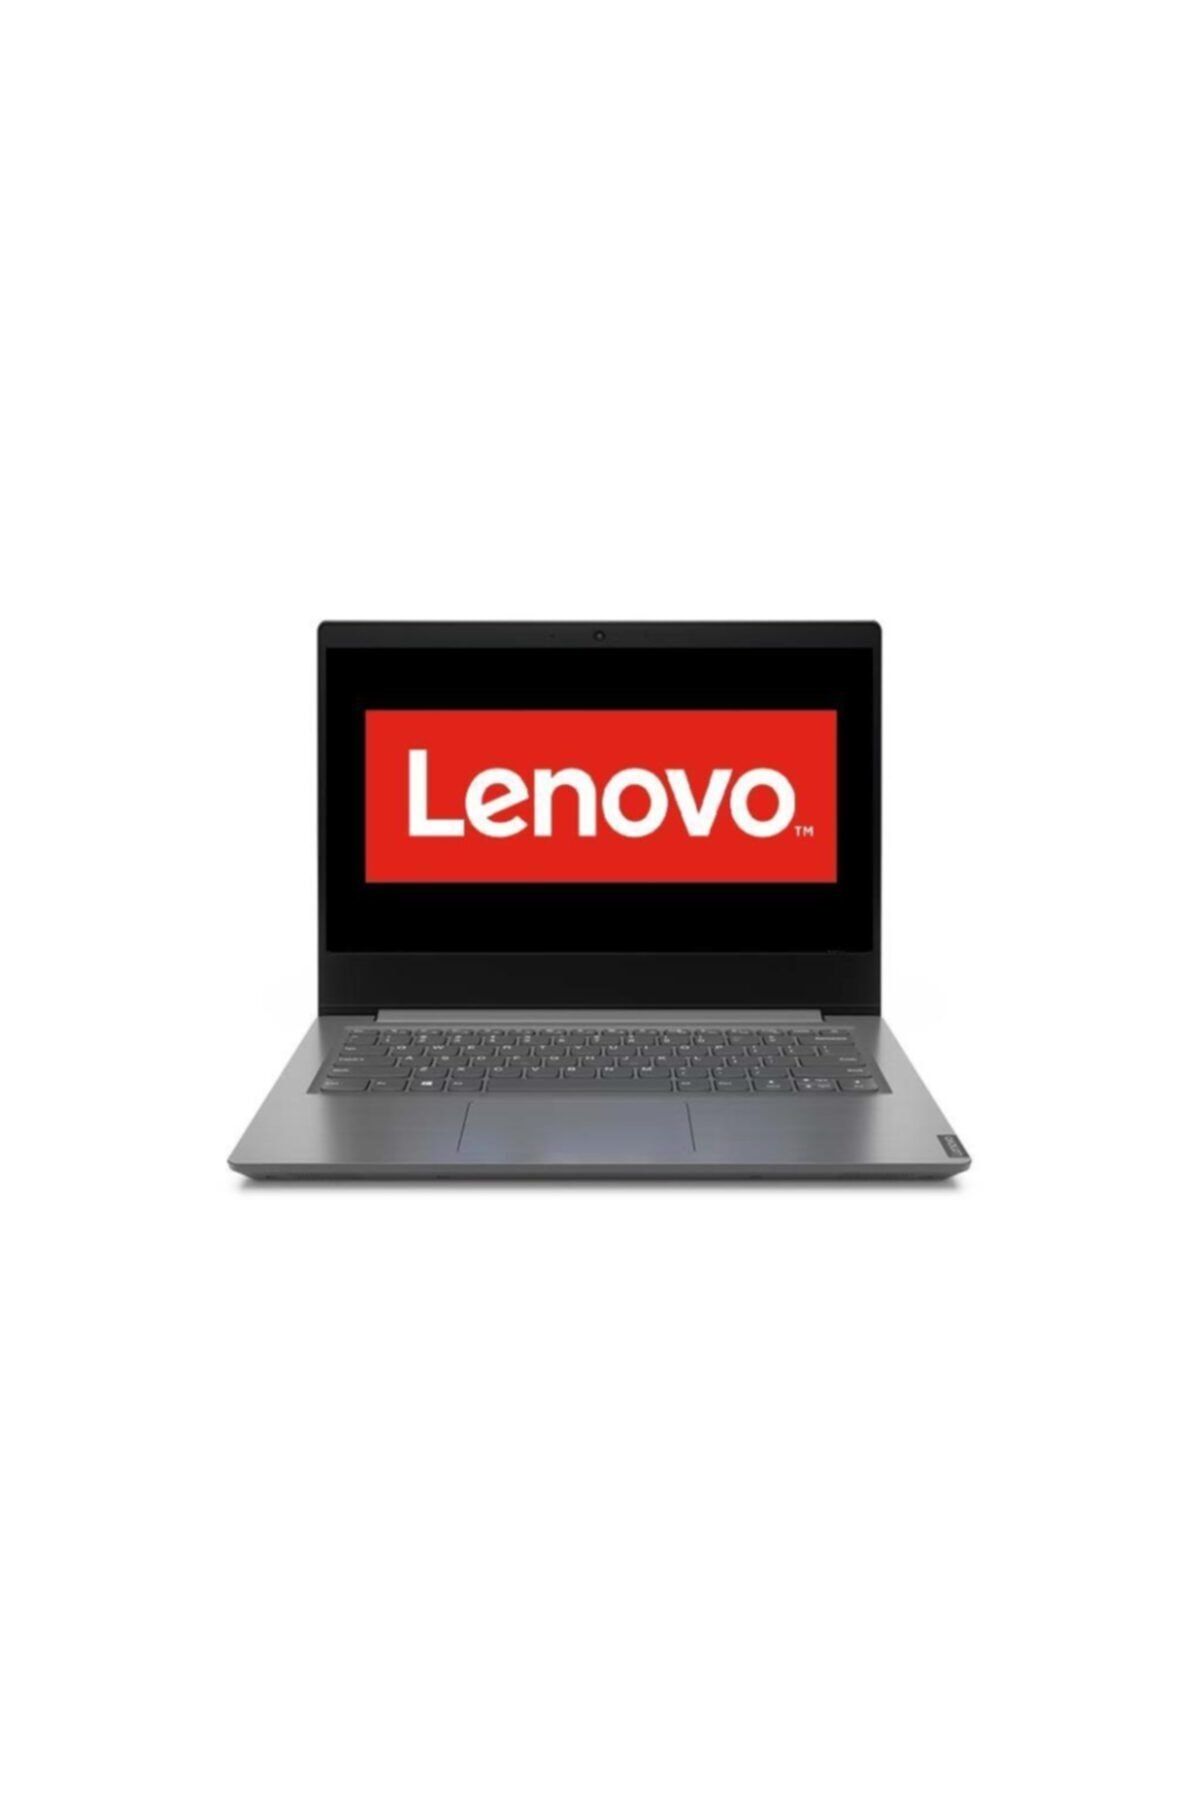 LENOVO V14 82c4011ntx I5-1035g1 8gb 256ssd 14"fullhd Freedos Taşınabilir Bilgisayar T06641